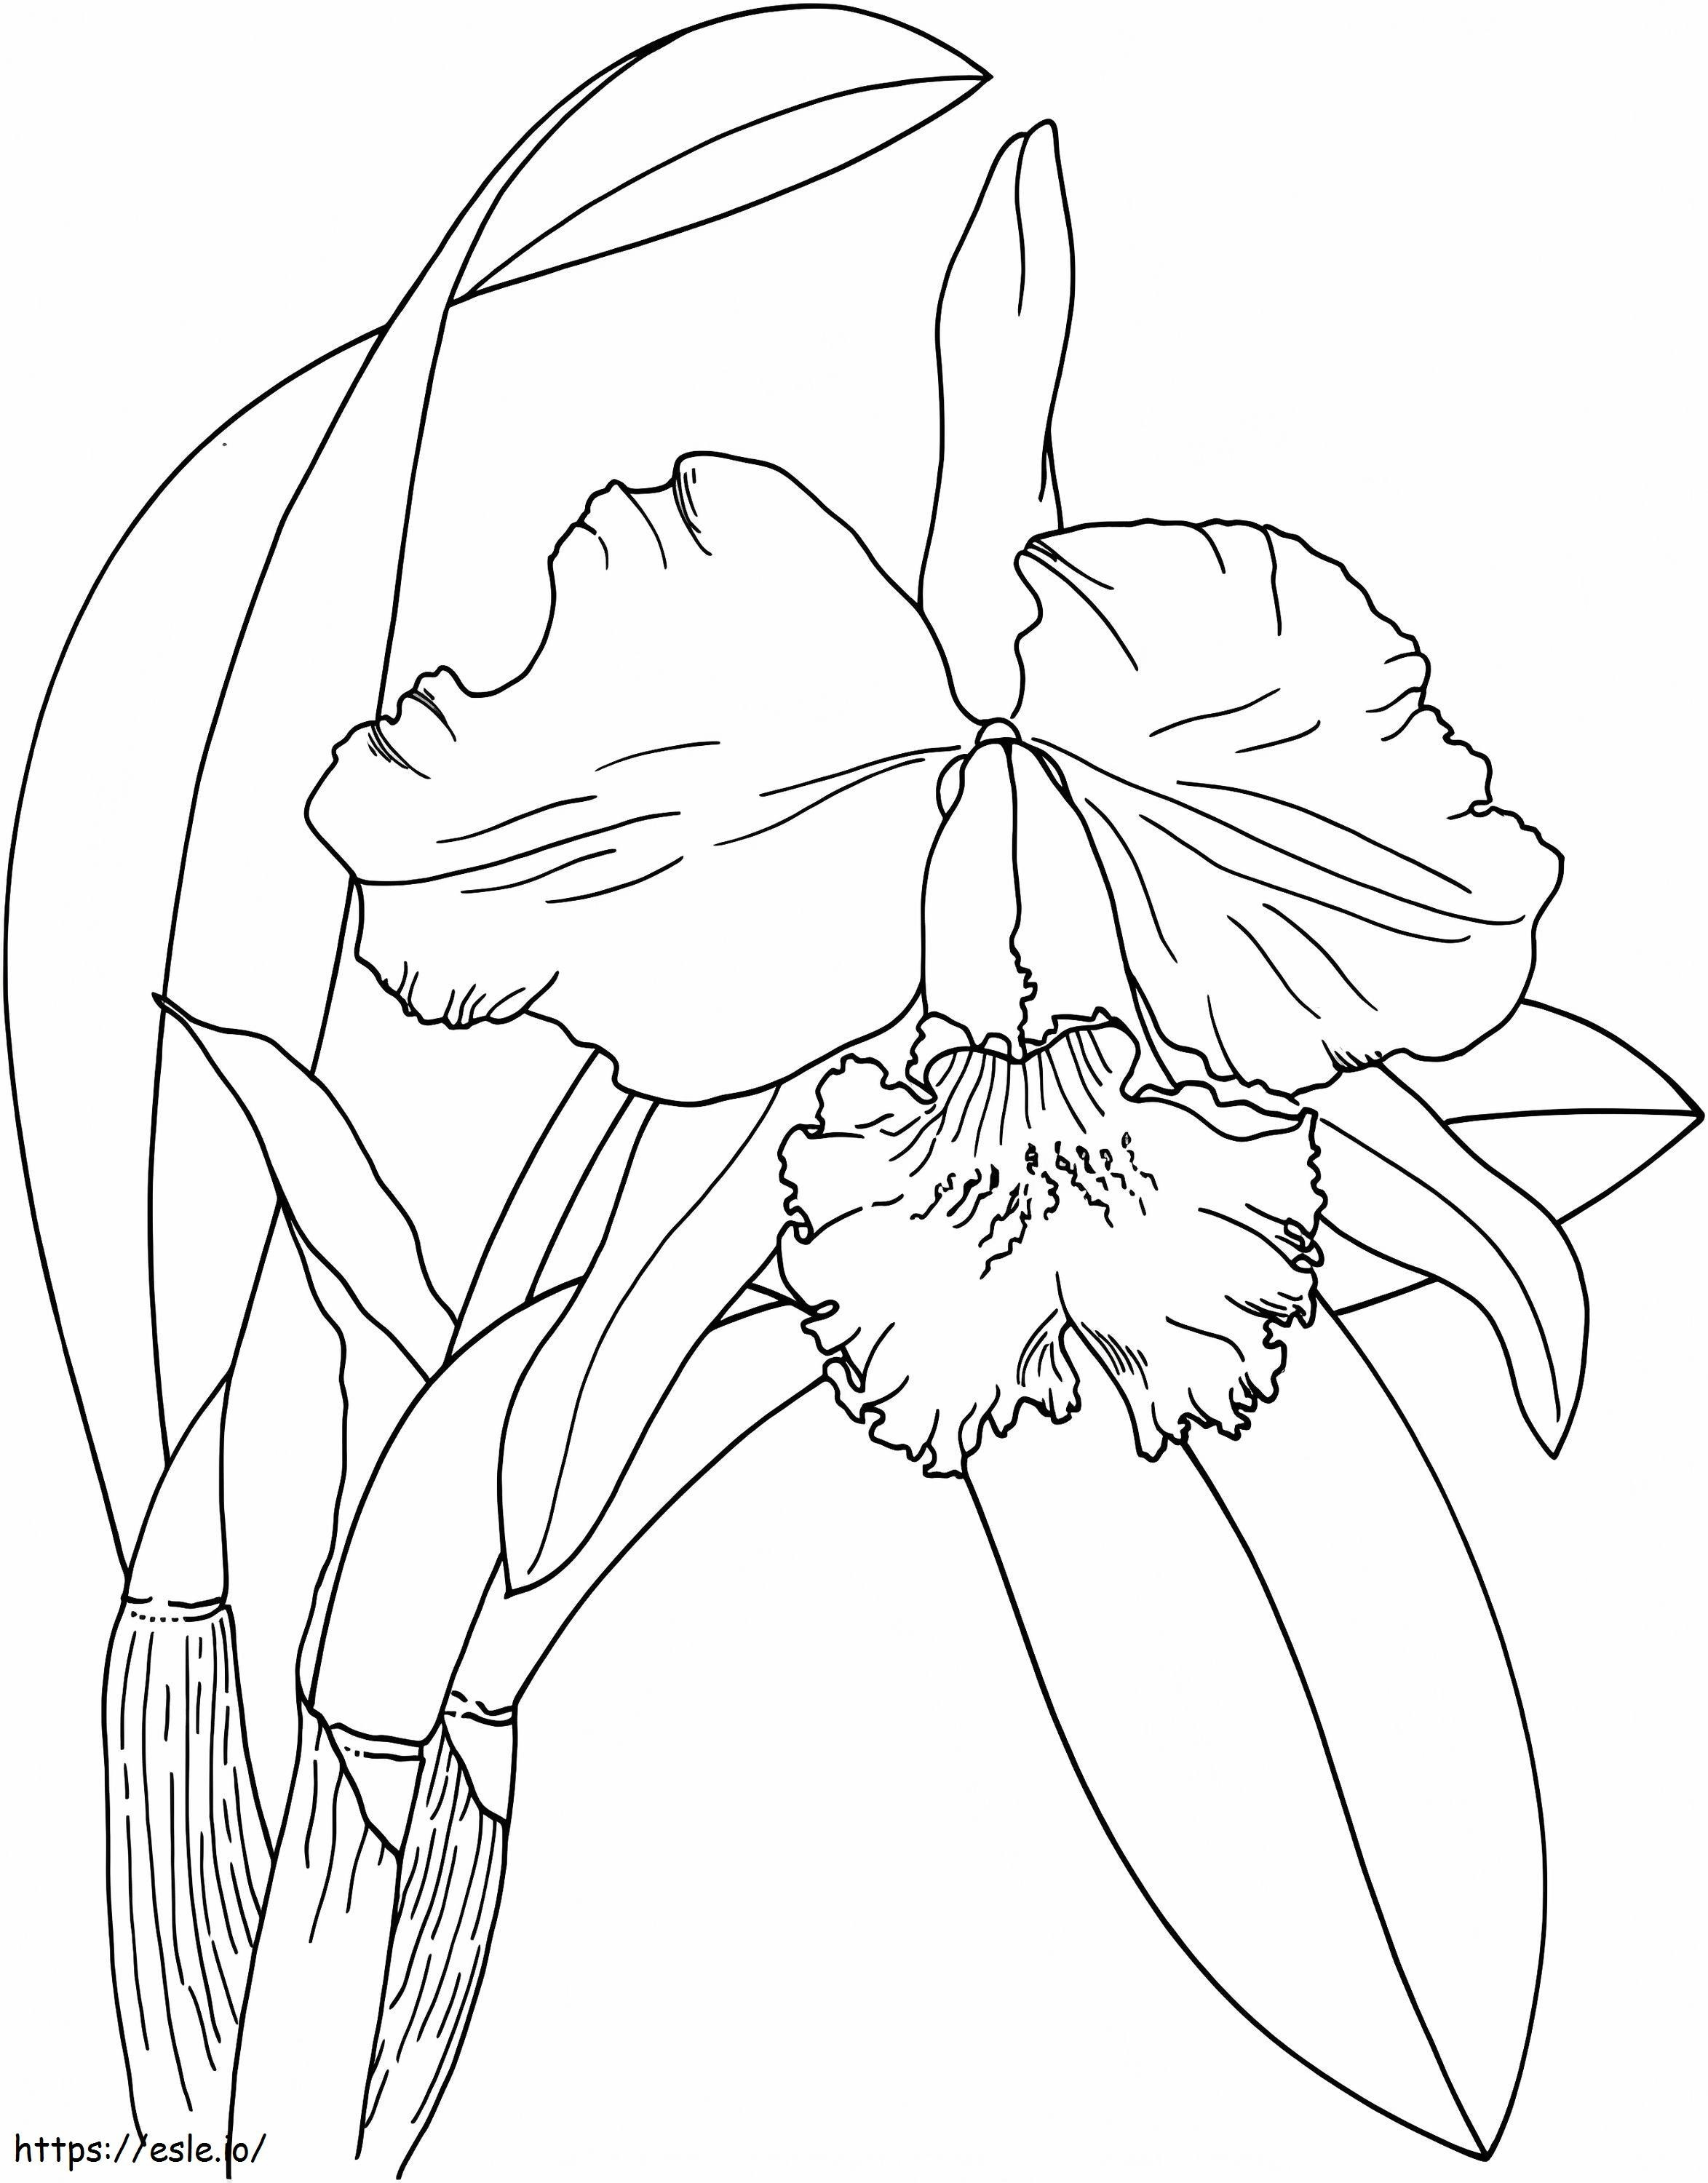 Orkide çiçeği boyama